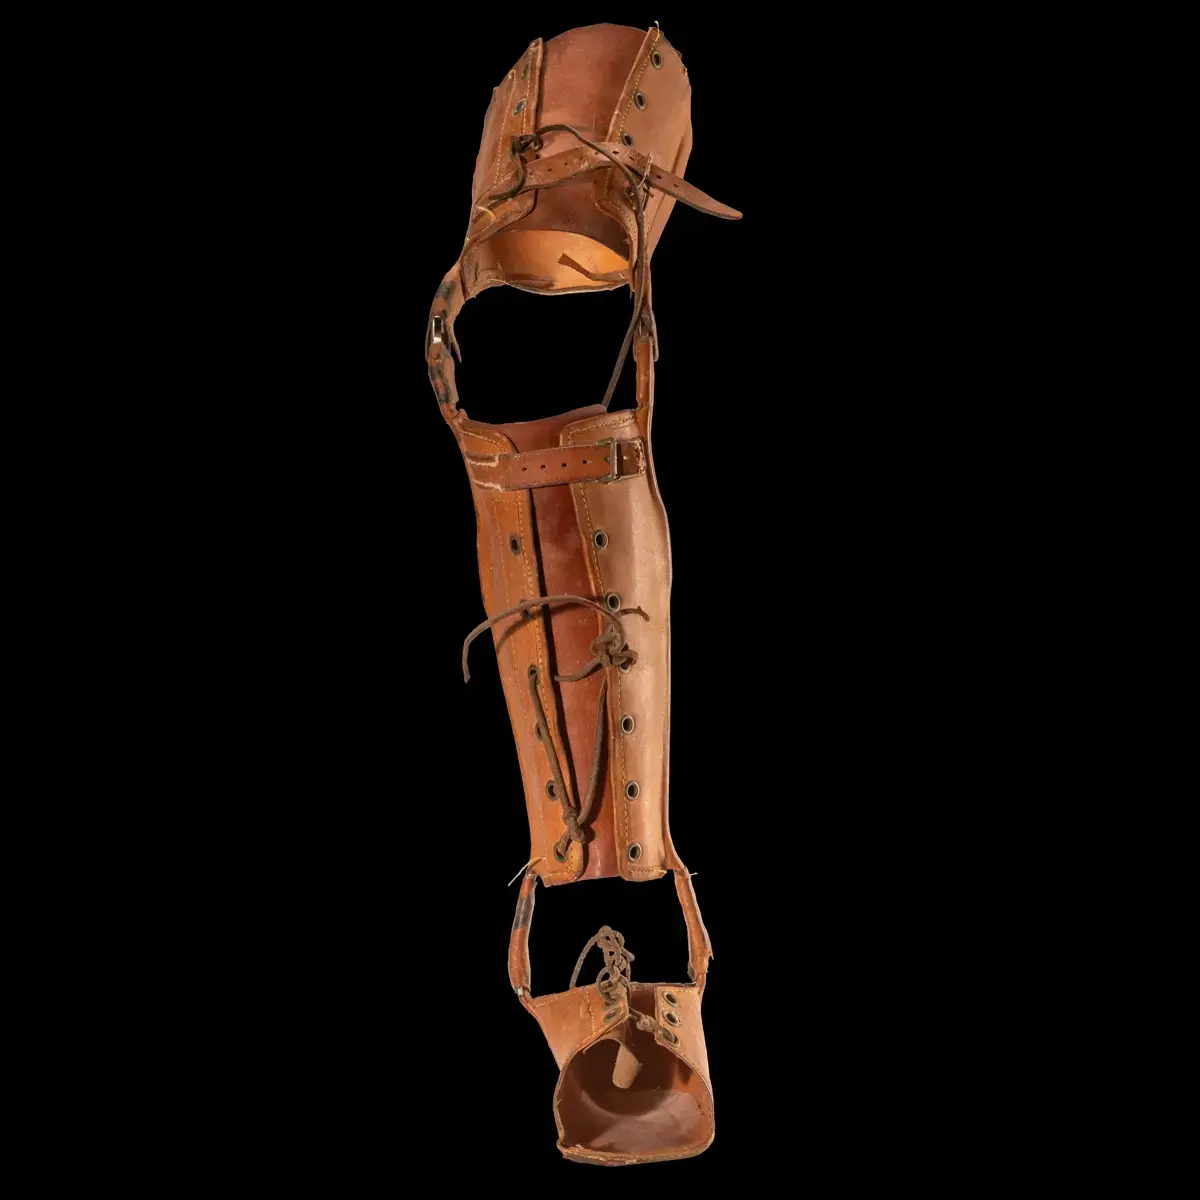 Stödbenet användes av Algot Ångman. Algot föddes med en muselföränding i höger ben och använde benet för att det skulle vara enklare att gå på benet.